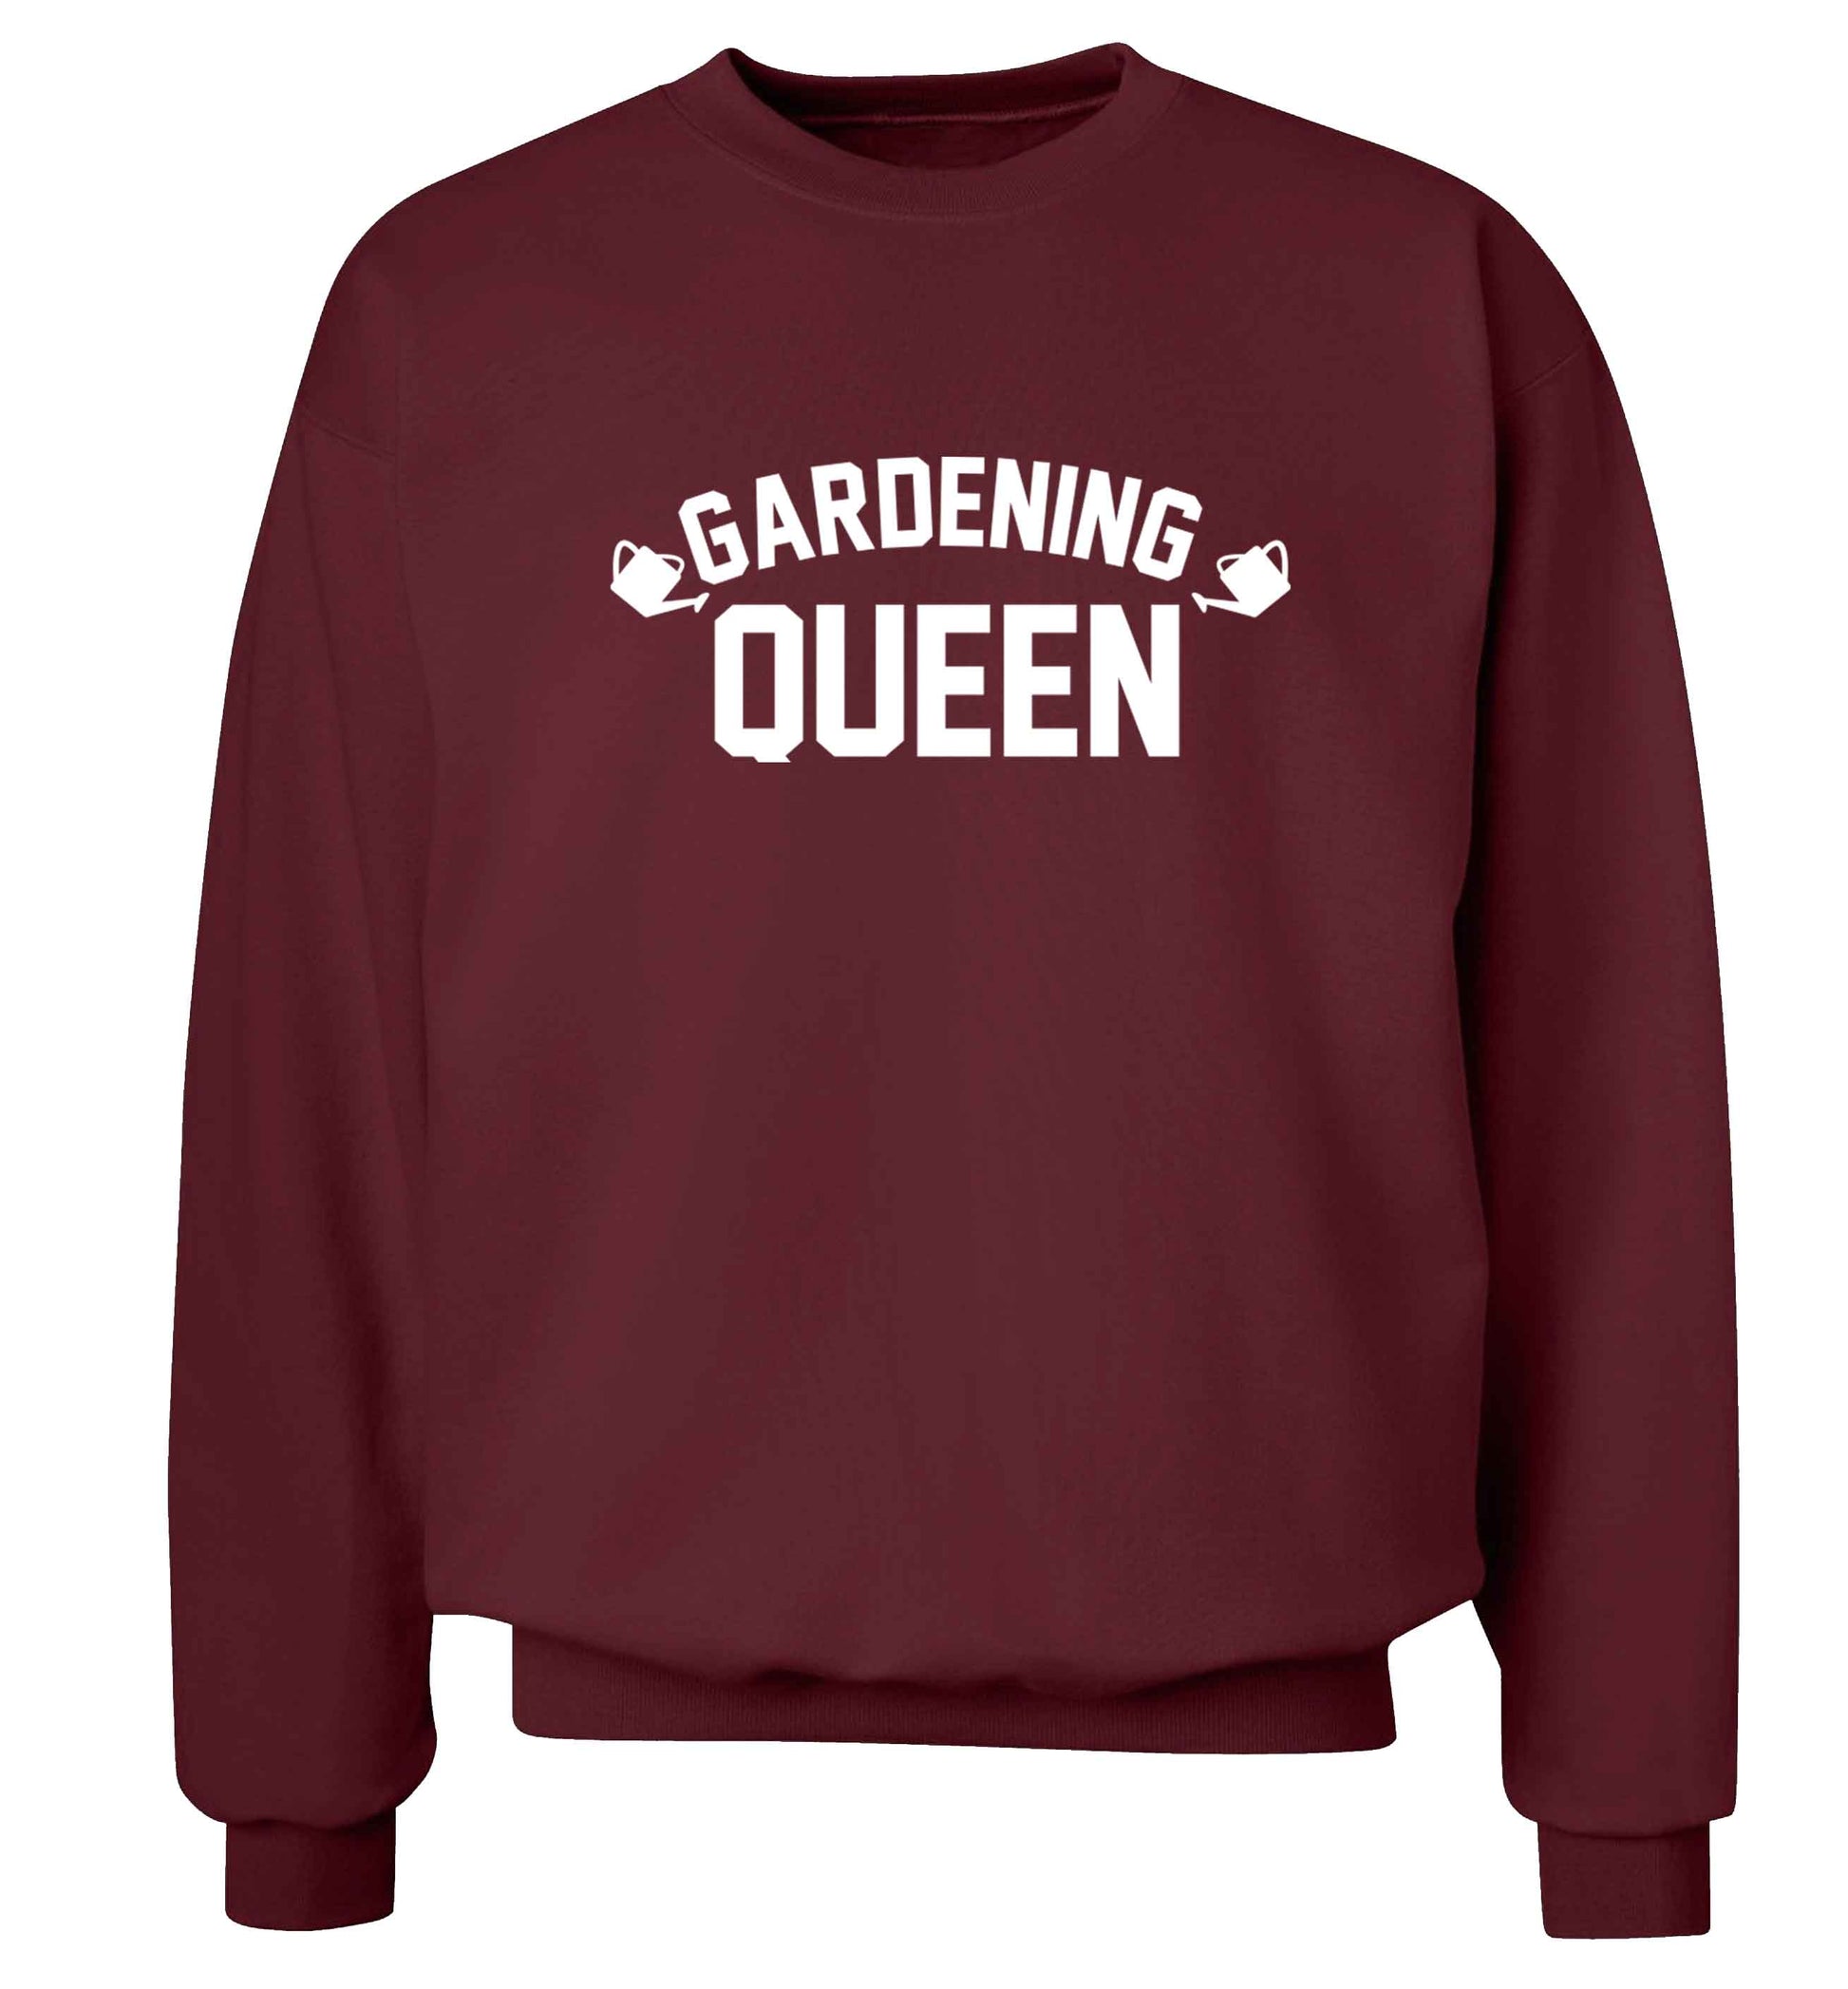 Gardening queen Adult's unisex maroon Sweater 2XL